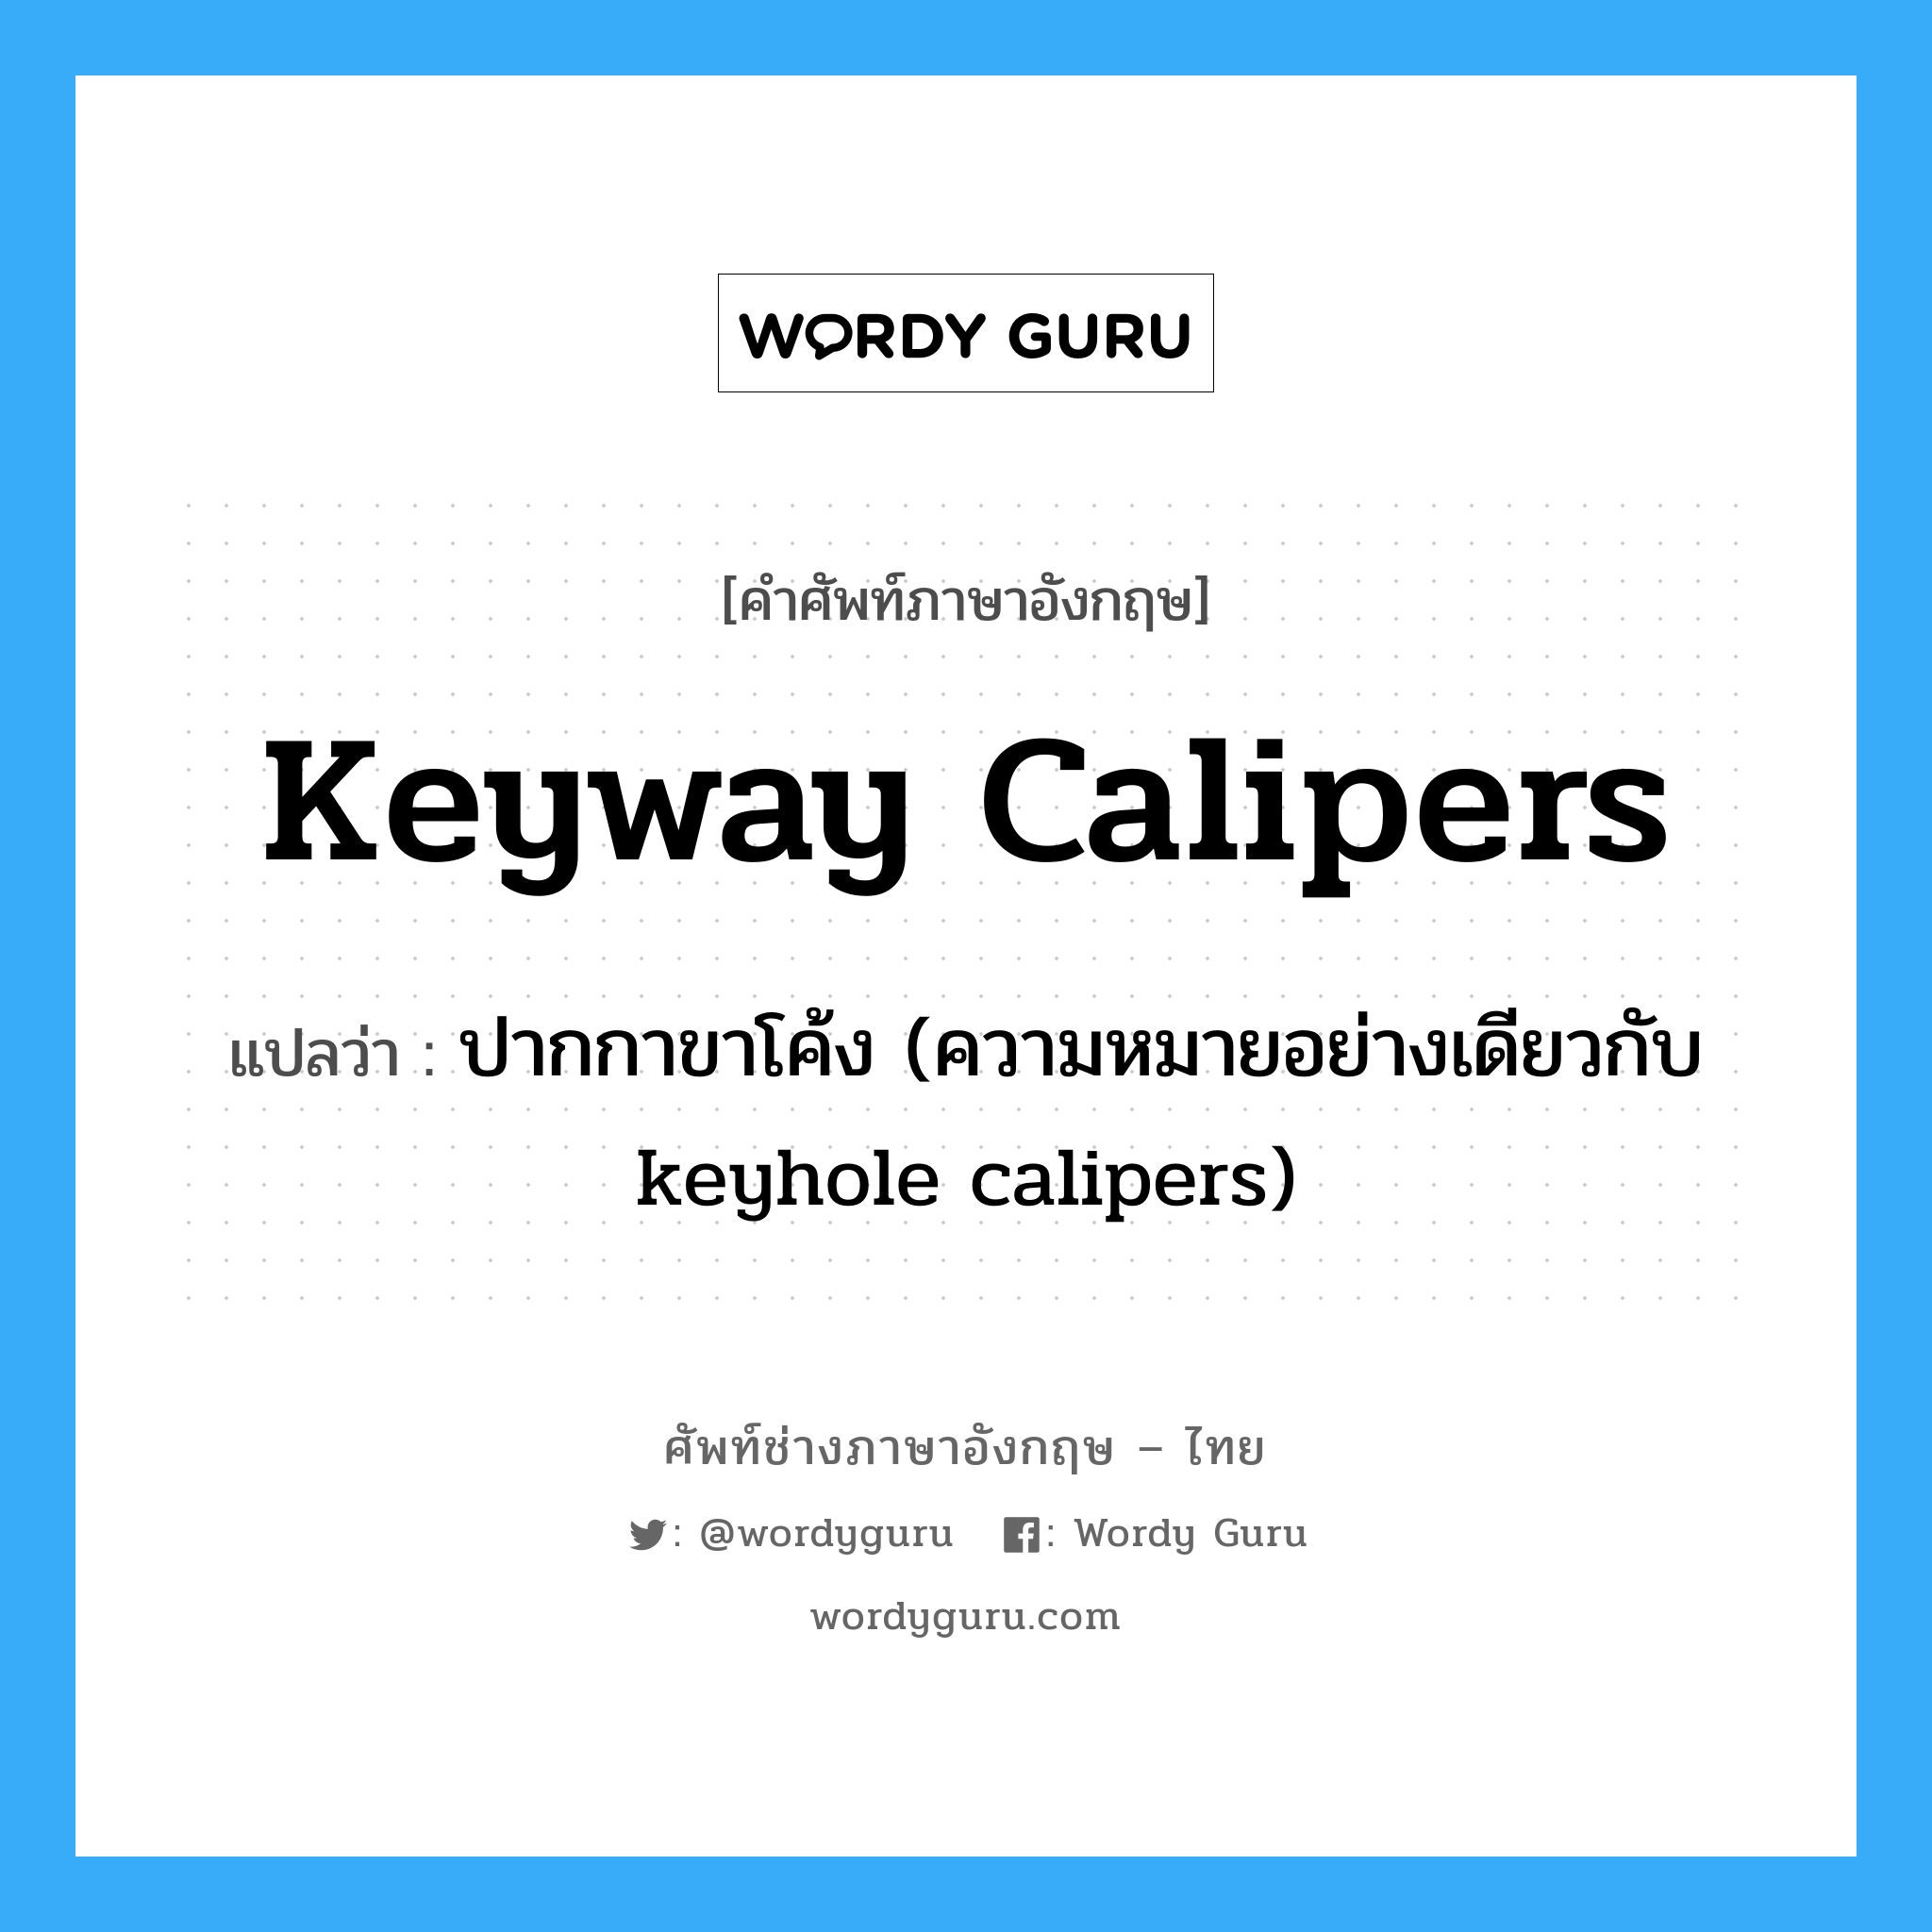 keyway calipers แปลว่า?, คำศัพท์ช่างภาษาอังกฤษ - ไทย keyway calipers คำศัพท์ภาษาอังกฤษ keyway calipers แปลว่า ปากกาขาโค้ง (ความหมายอย่างเดียวกับ keyhole calipers)